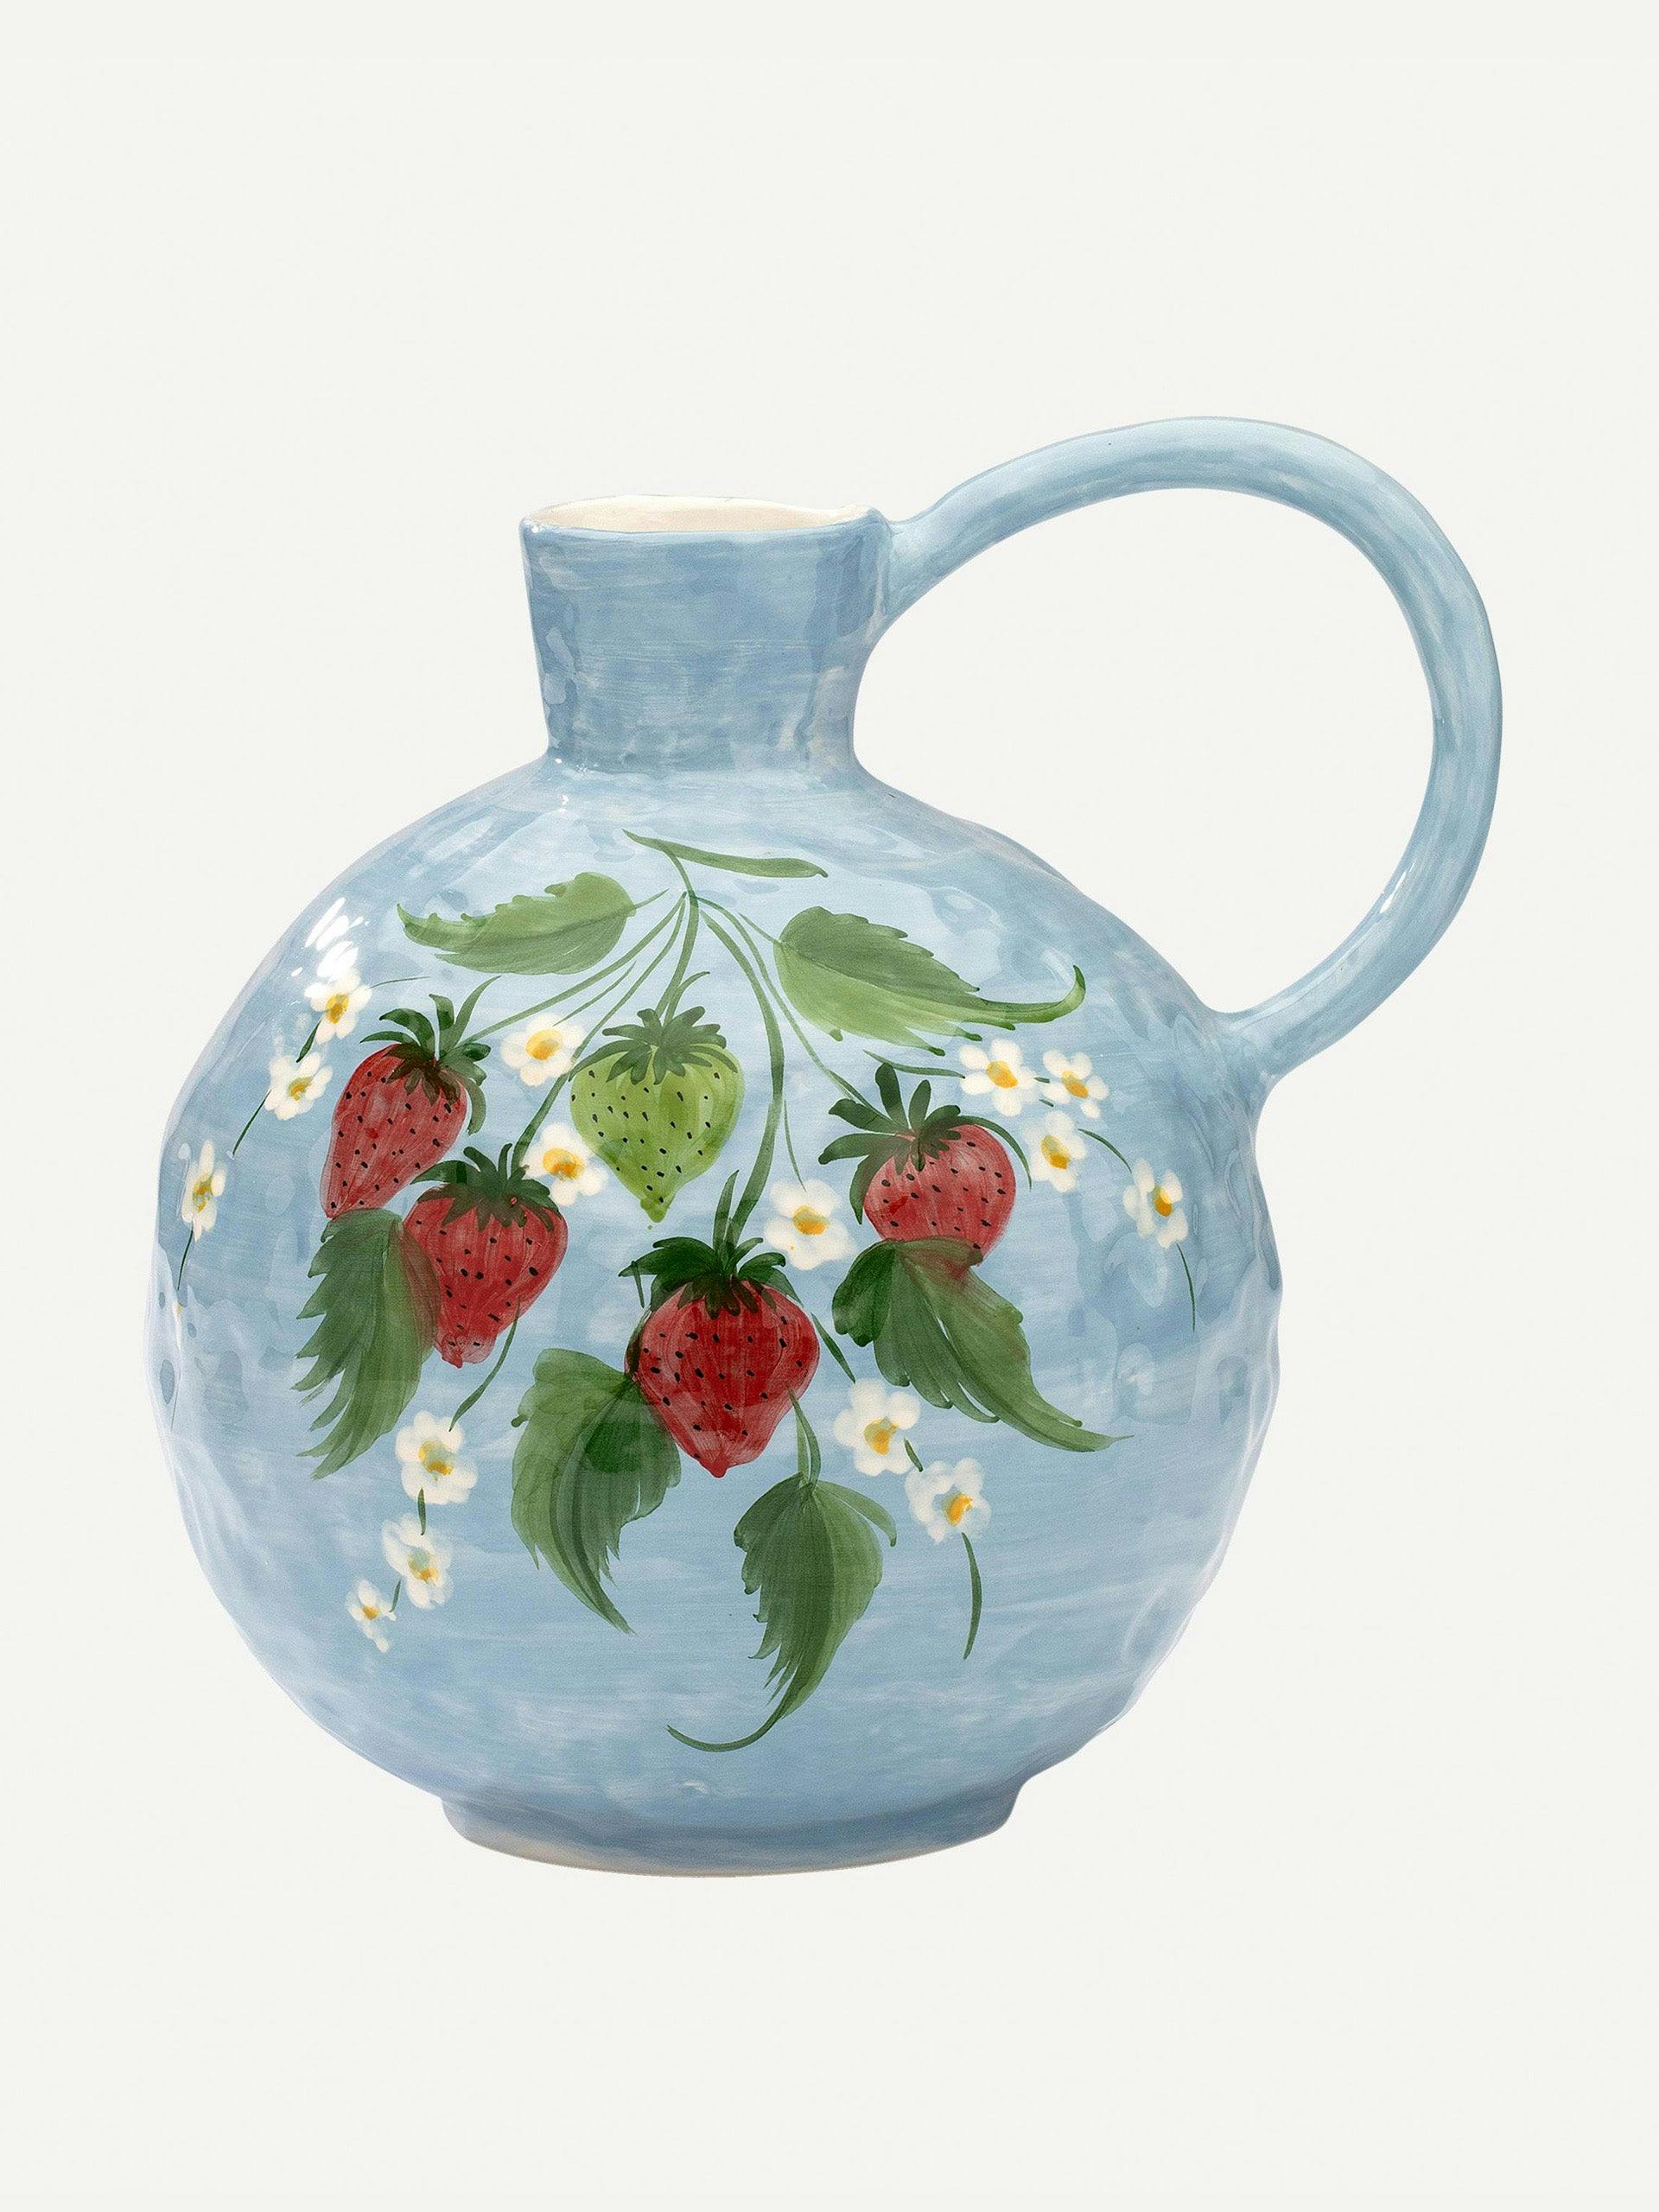 Strawberry Fields ceramic jug